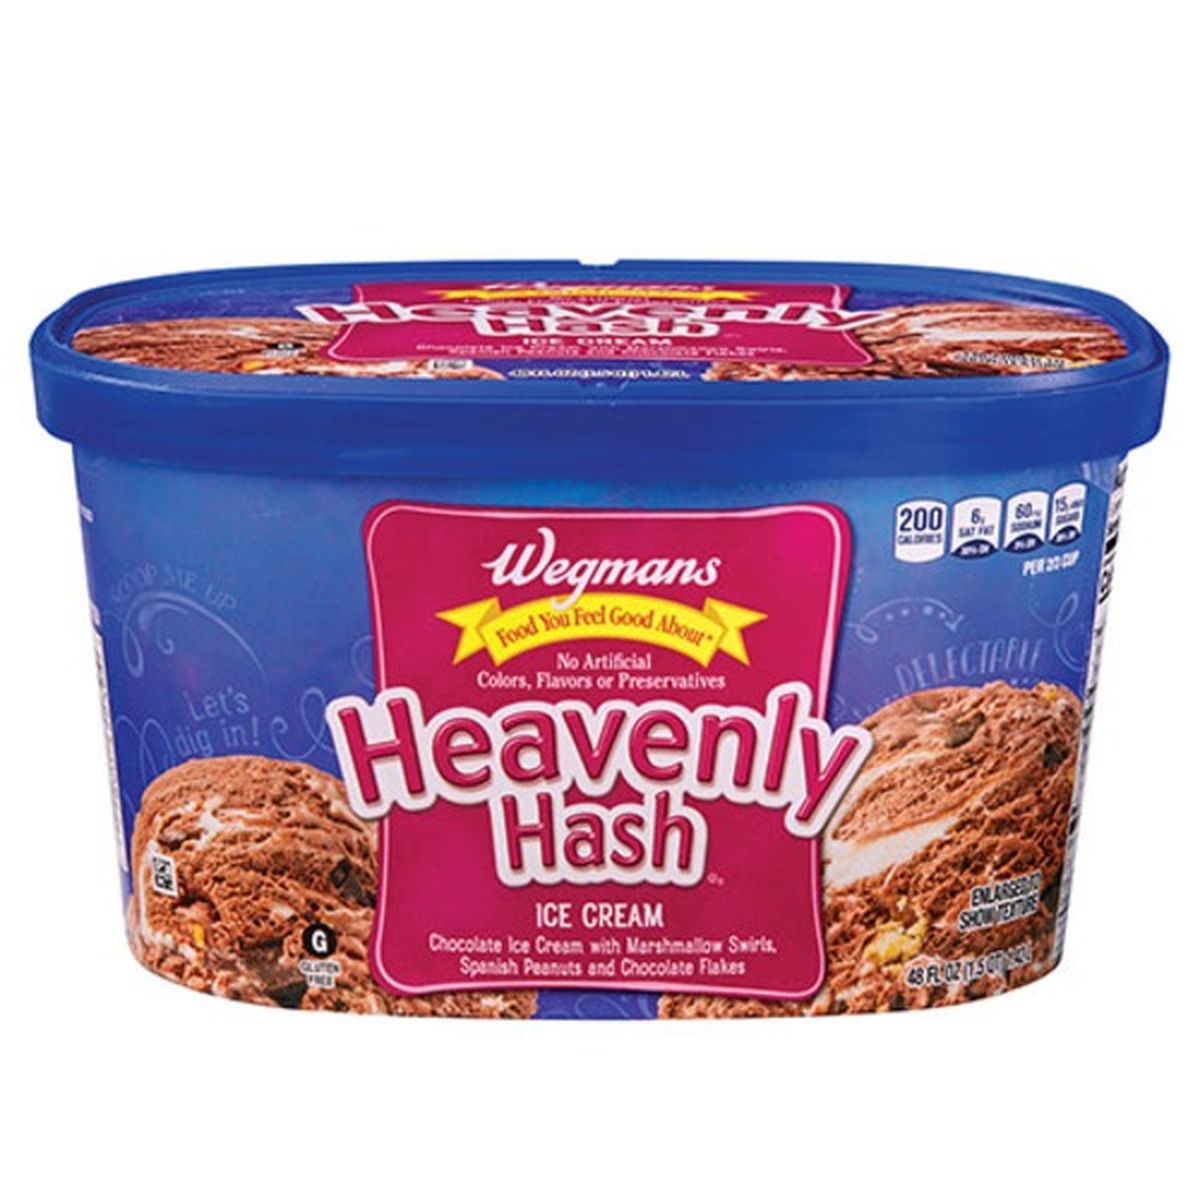 Calories in Wegmans Heavenly Hash Ice Cream